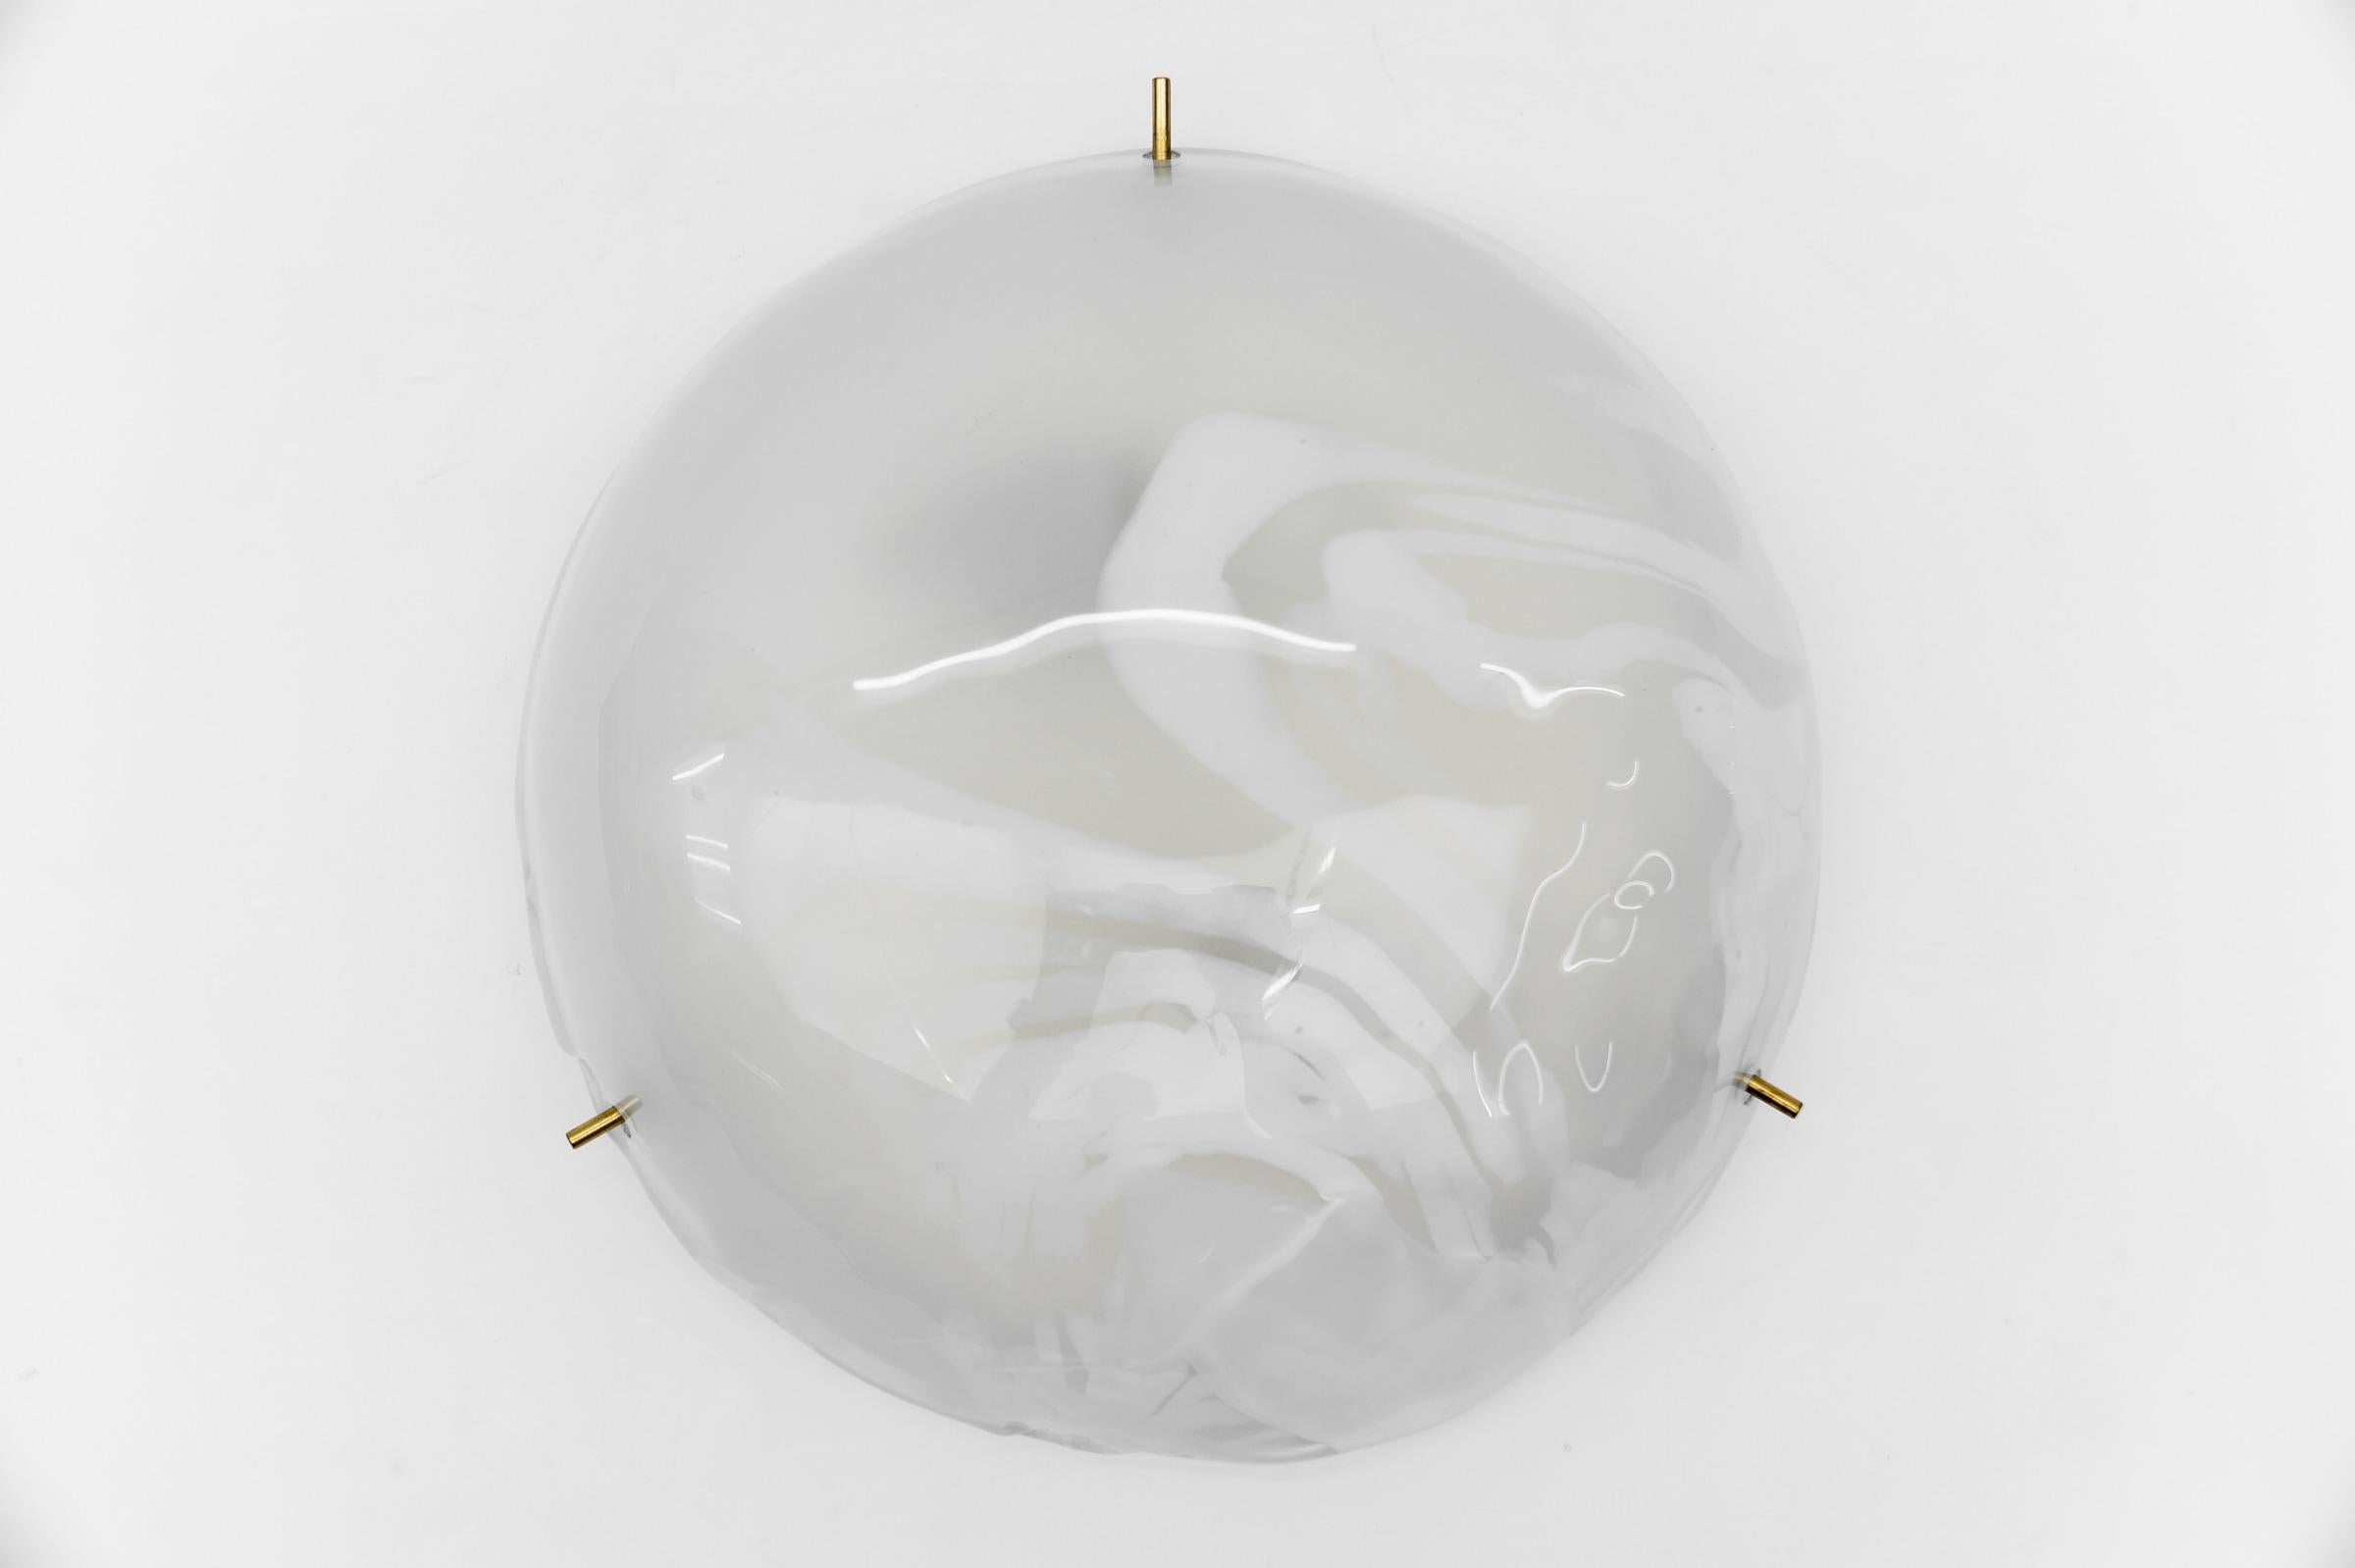 Lampe affleurante en verre blanc de Murano par Hillebrand, Allemagne Années 1960,

Dimensions
Hauteur : 4.33 in. (11 cm)
Diamètre : 13,77 in. (35 cm)

Le luminaire nécessite 2 ampoules standard E27 de 60W max.

Les ampoules ne sont pas incluses.
Il